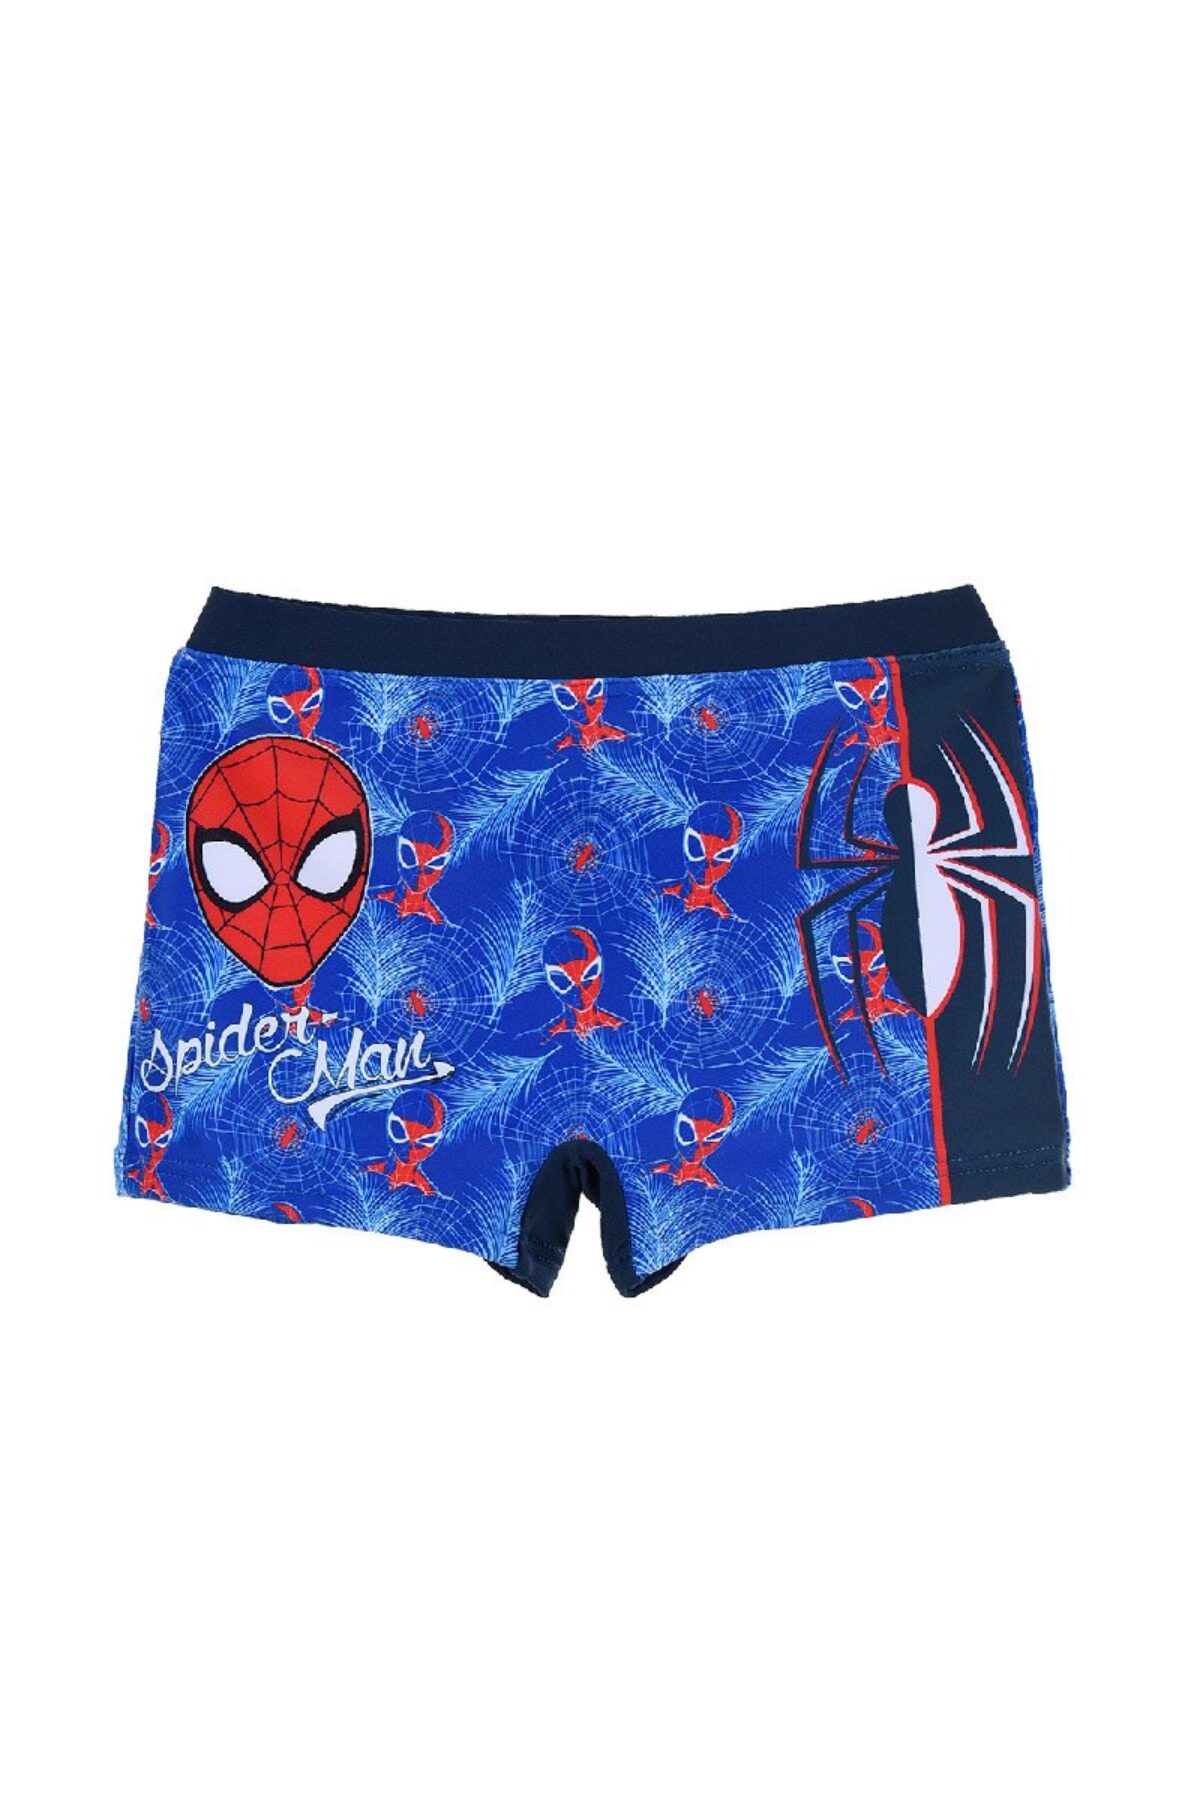 Set 3 Marvel Spiderman 100% cotton briefs for boys 6–8 years UE 3009 - Ryfi  Online Store